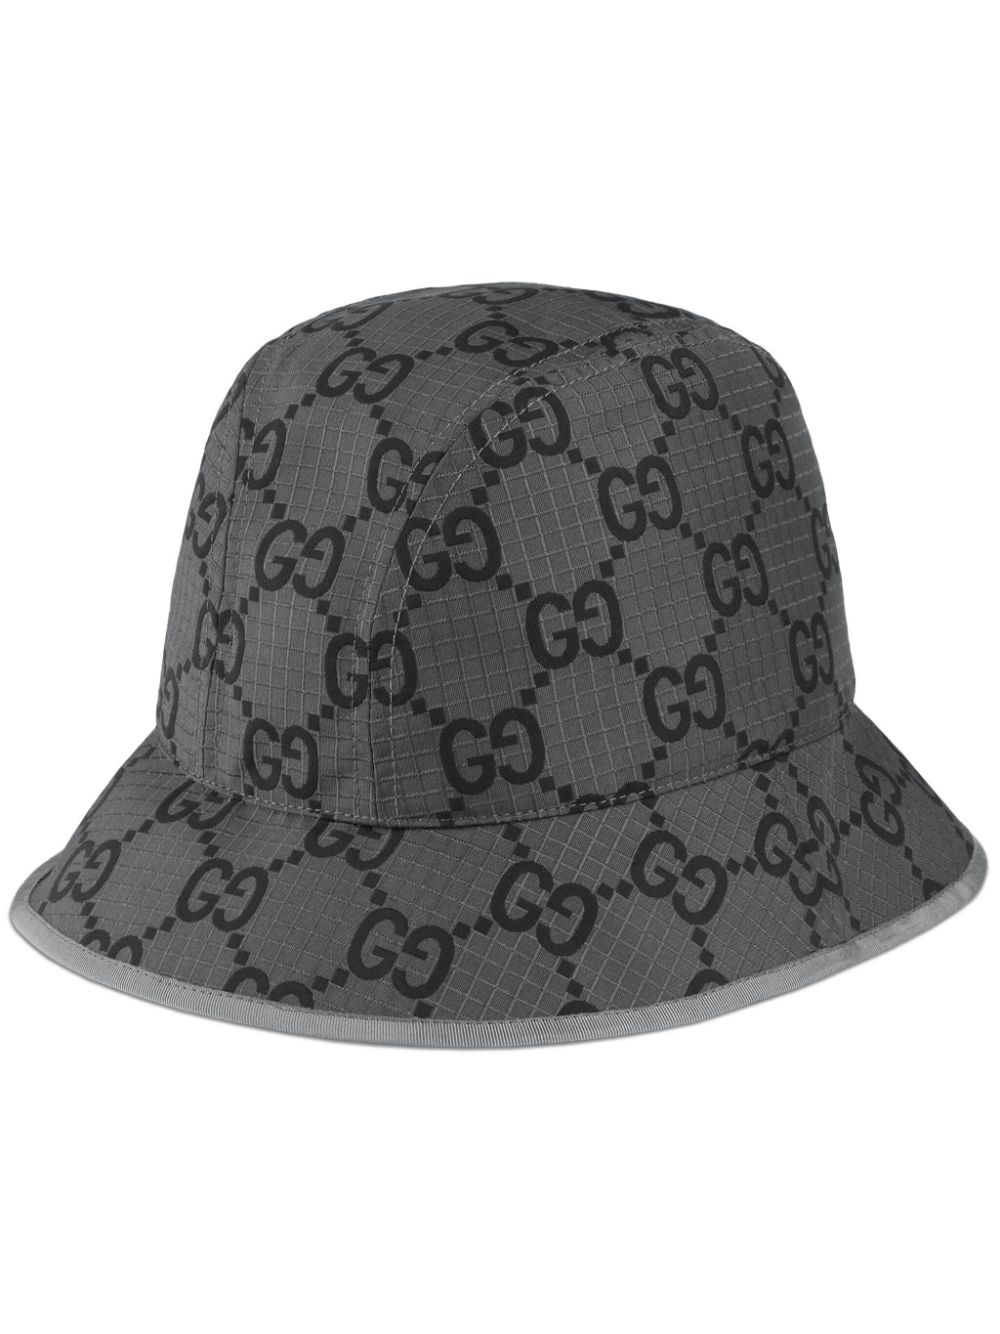 GG canvas bucket hat - 1